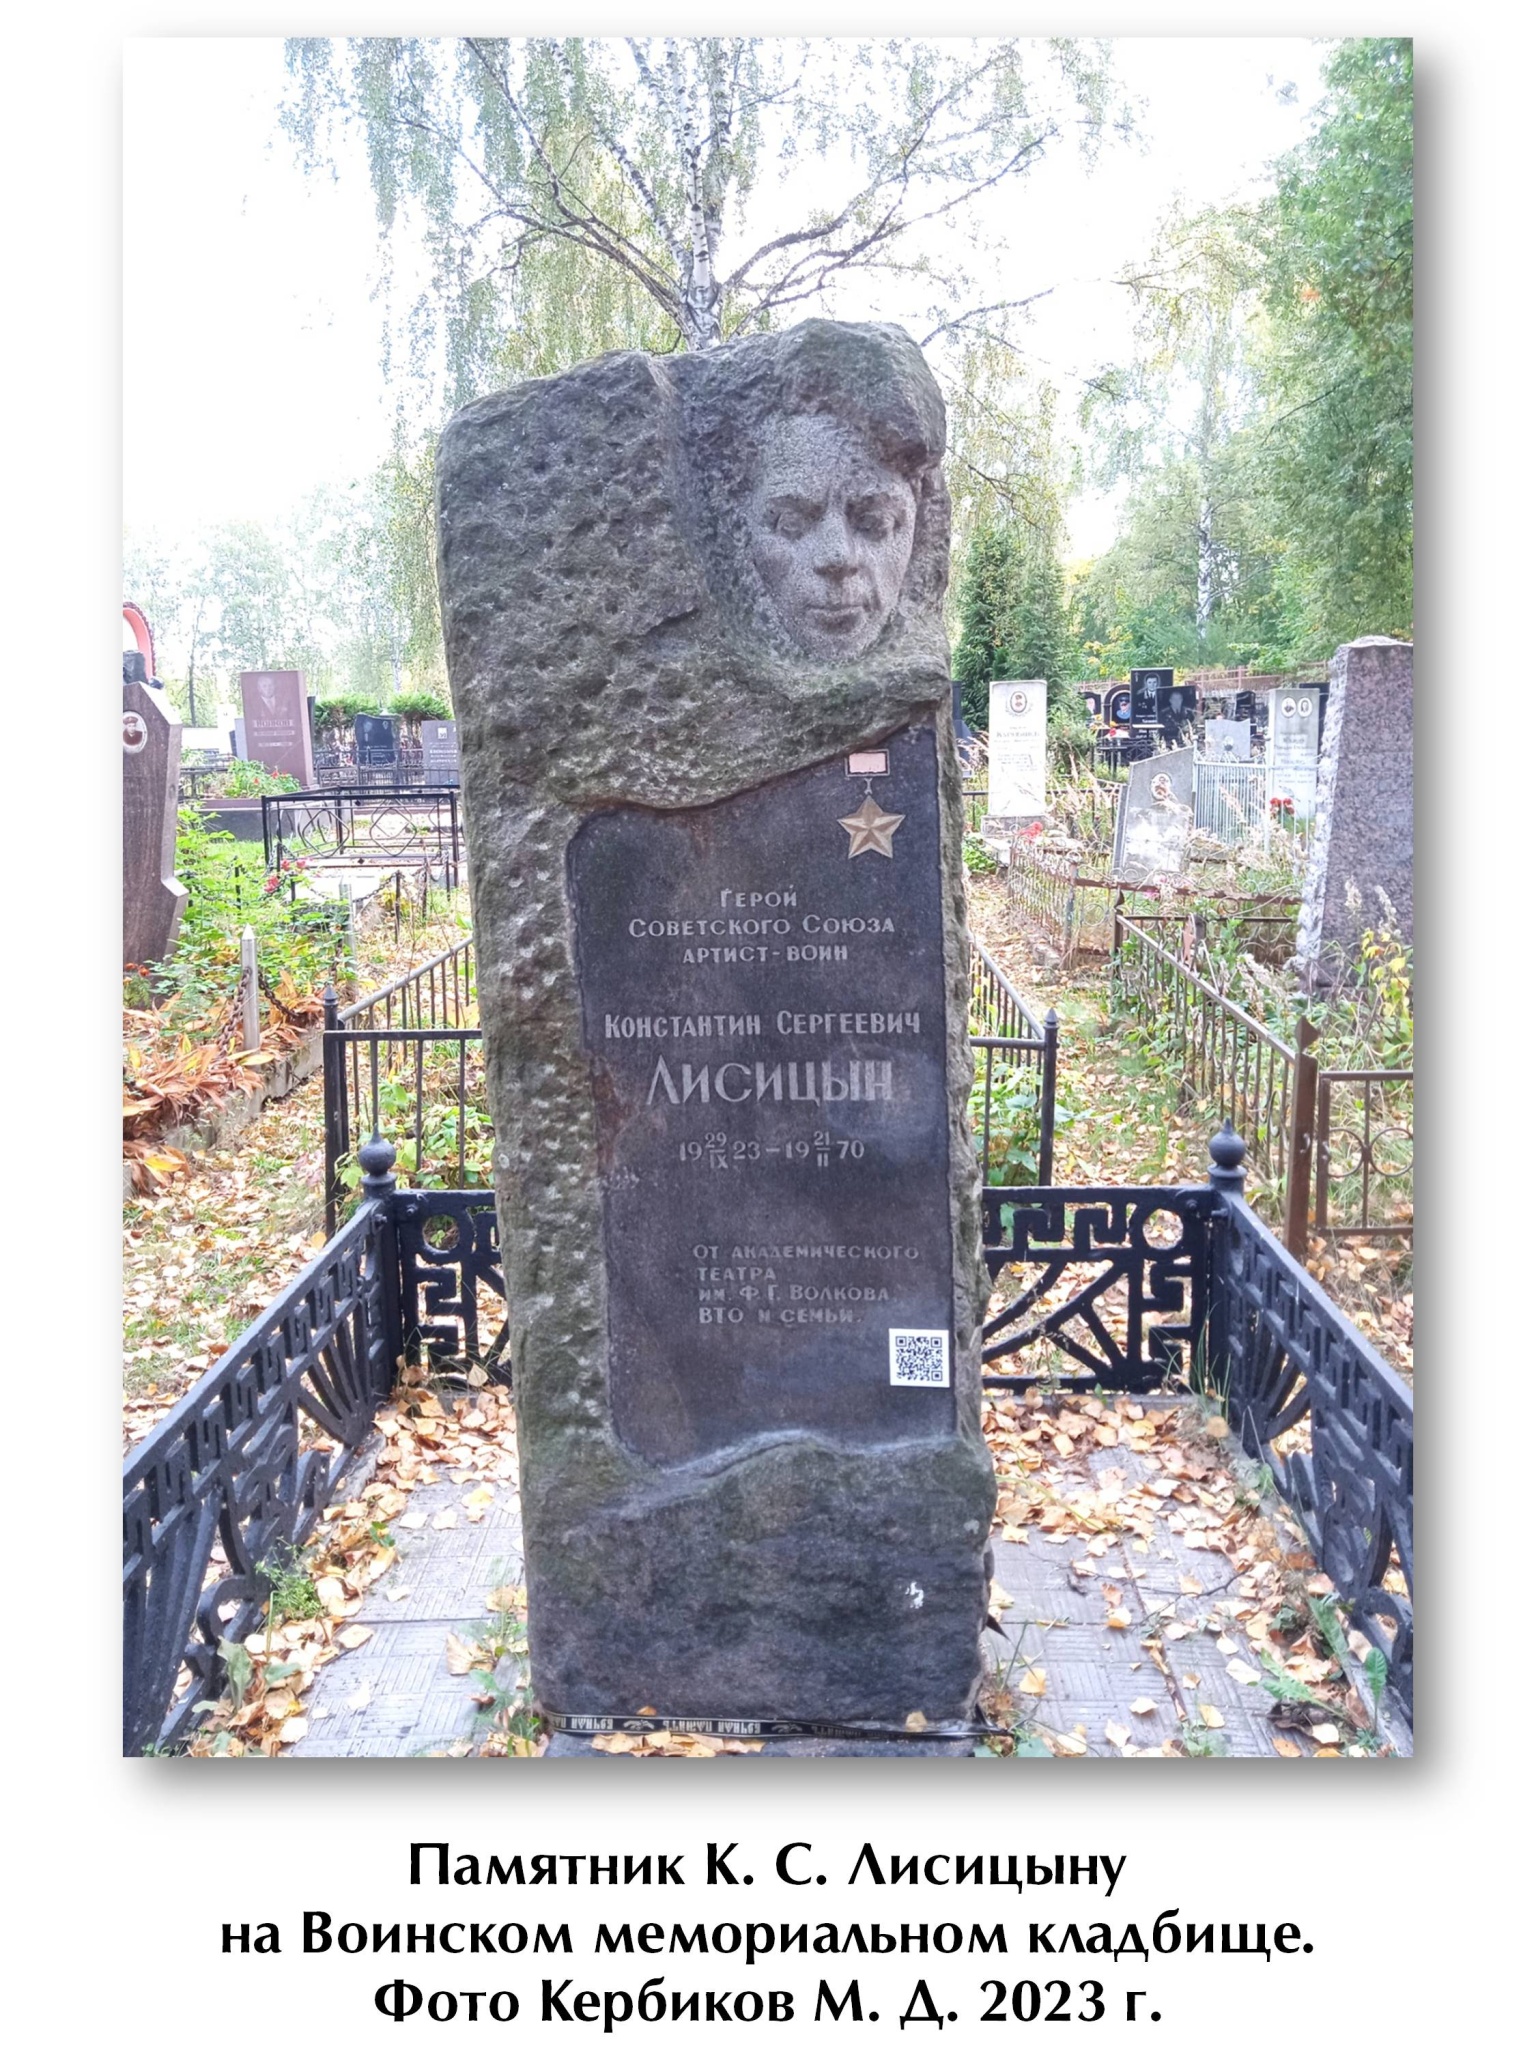 24. Памятник К. С. Лисицыну на Воинском мемориальном кладбище. Фото Кербиков М. Д. 2023 г.